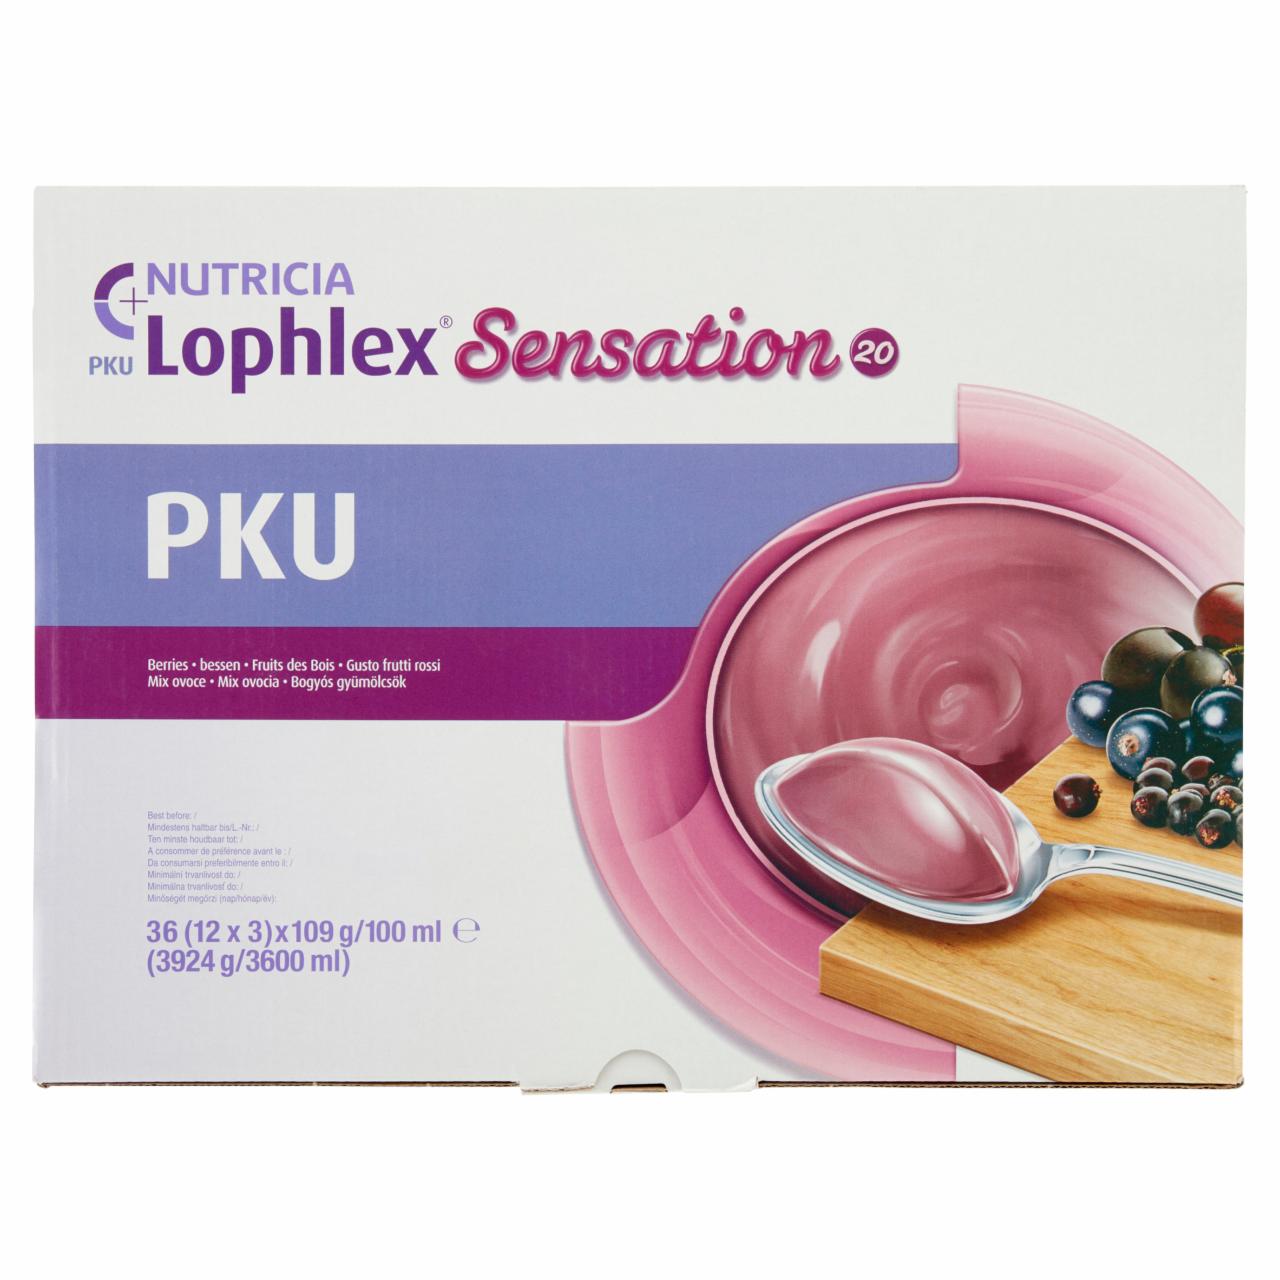 Képek - Nutricia PKU Lophlex Sensation bogyós gyümölcsök gyógyászati célra szánt élelmiszer 36 x 109 g